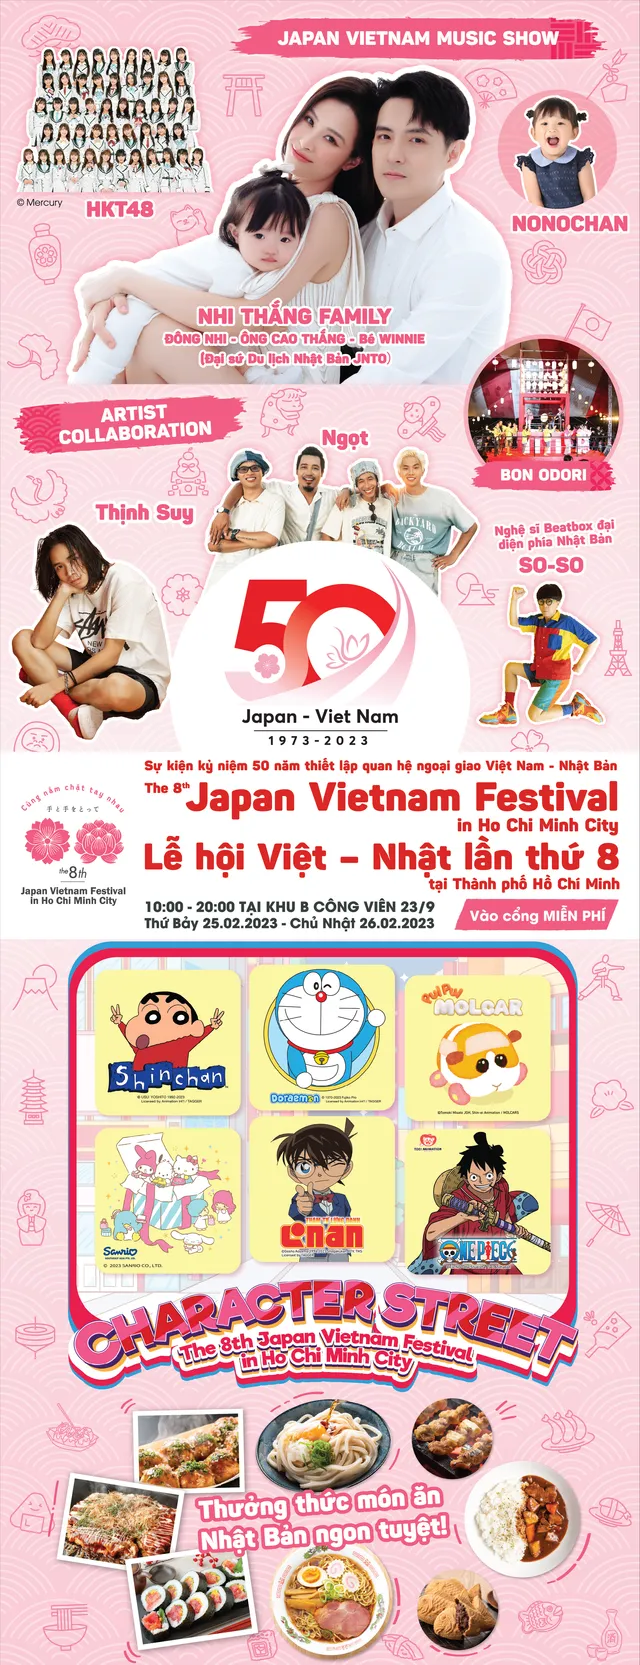 Sôi động các hoạt động tại Lễ hội Việt - Nhật lần thứ 8 - Ảnh 1.